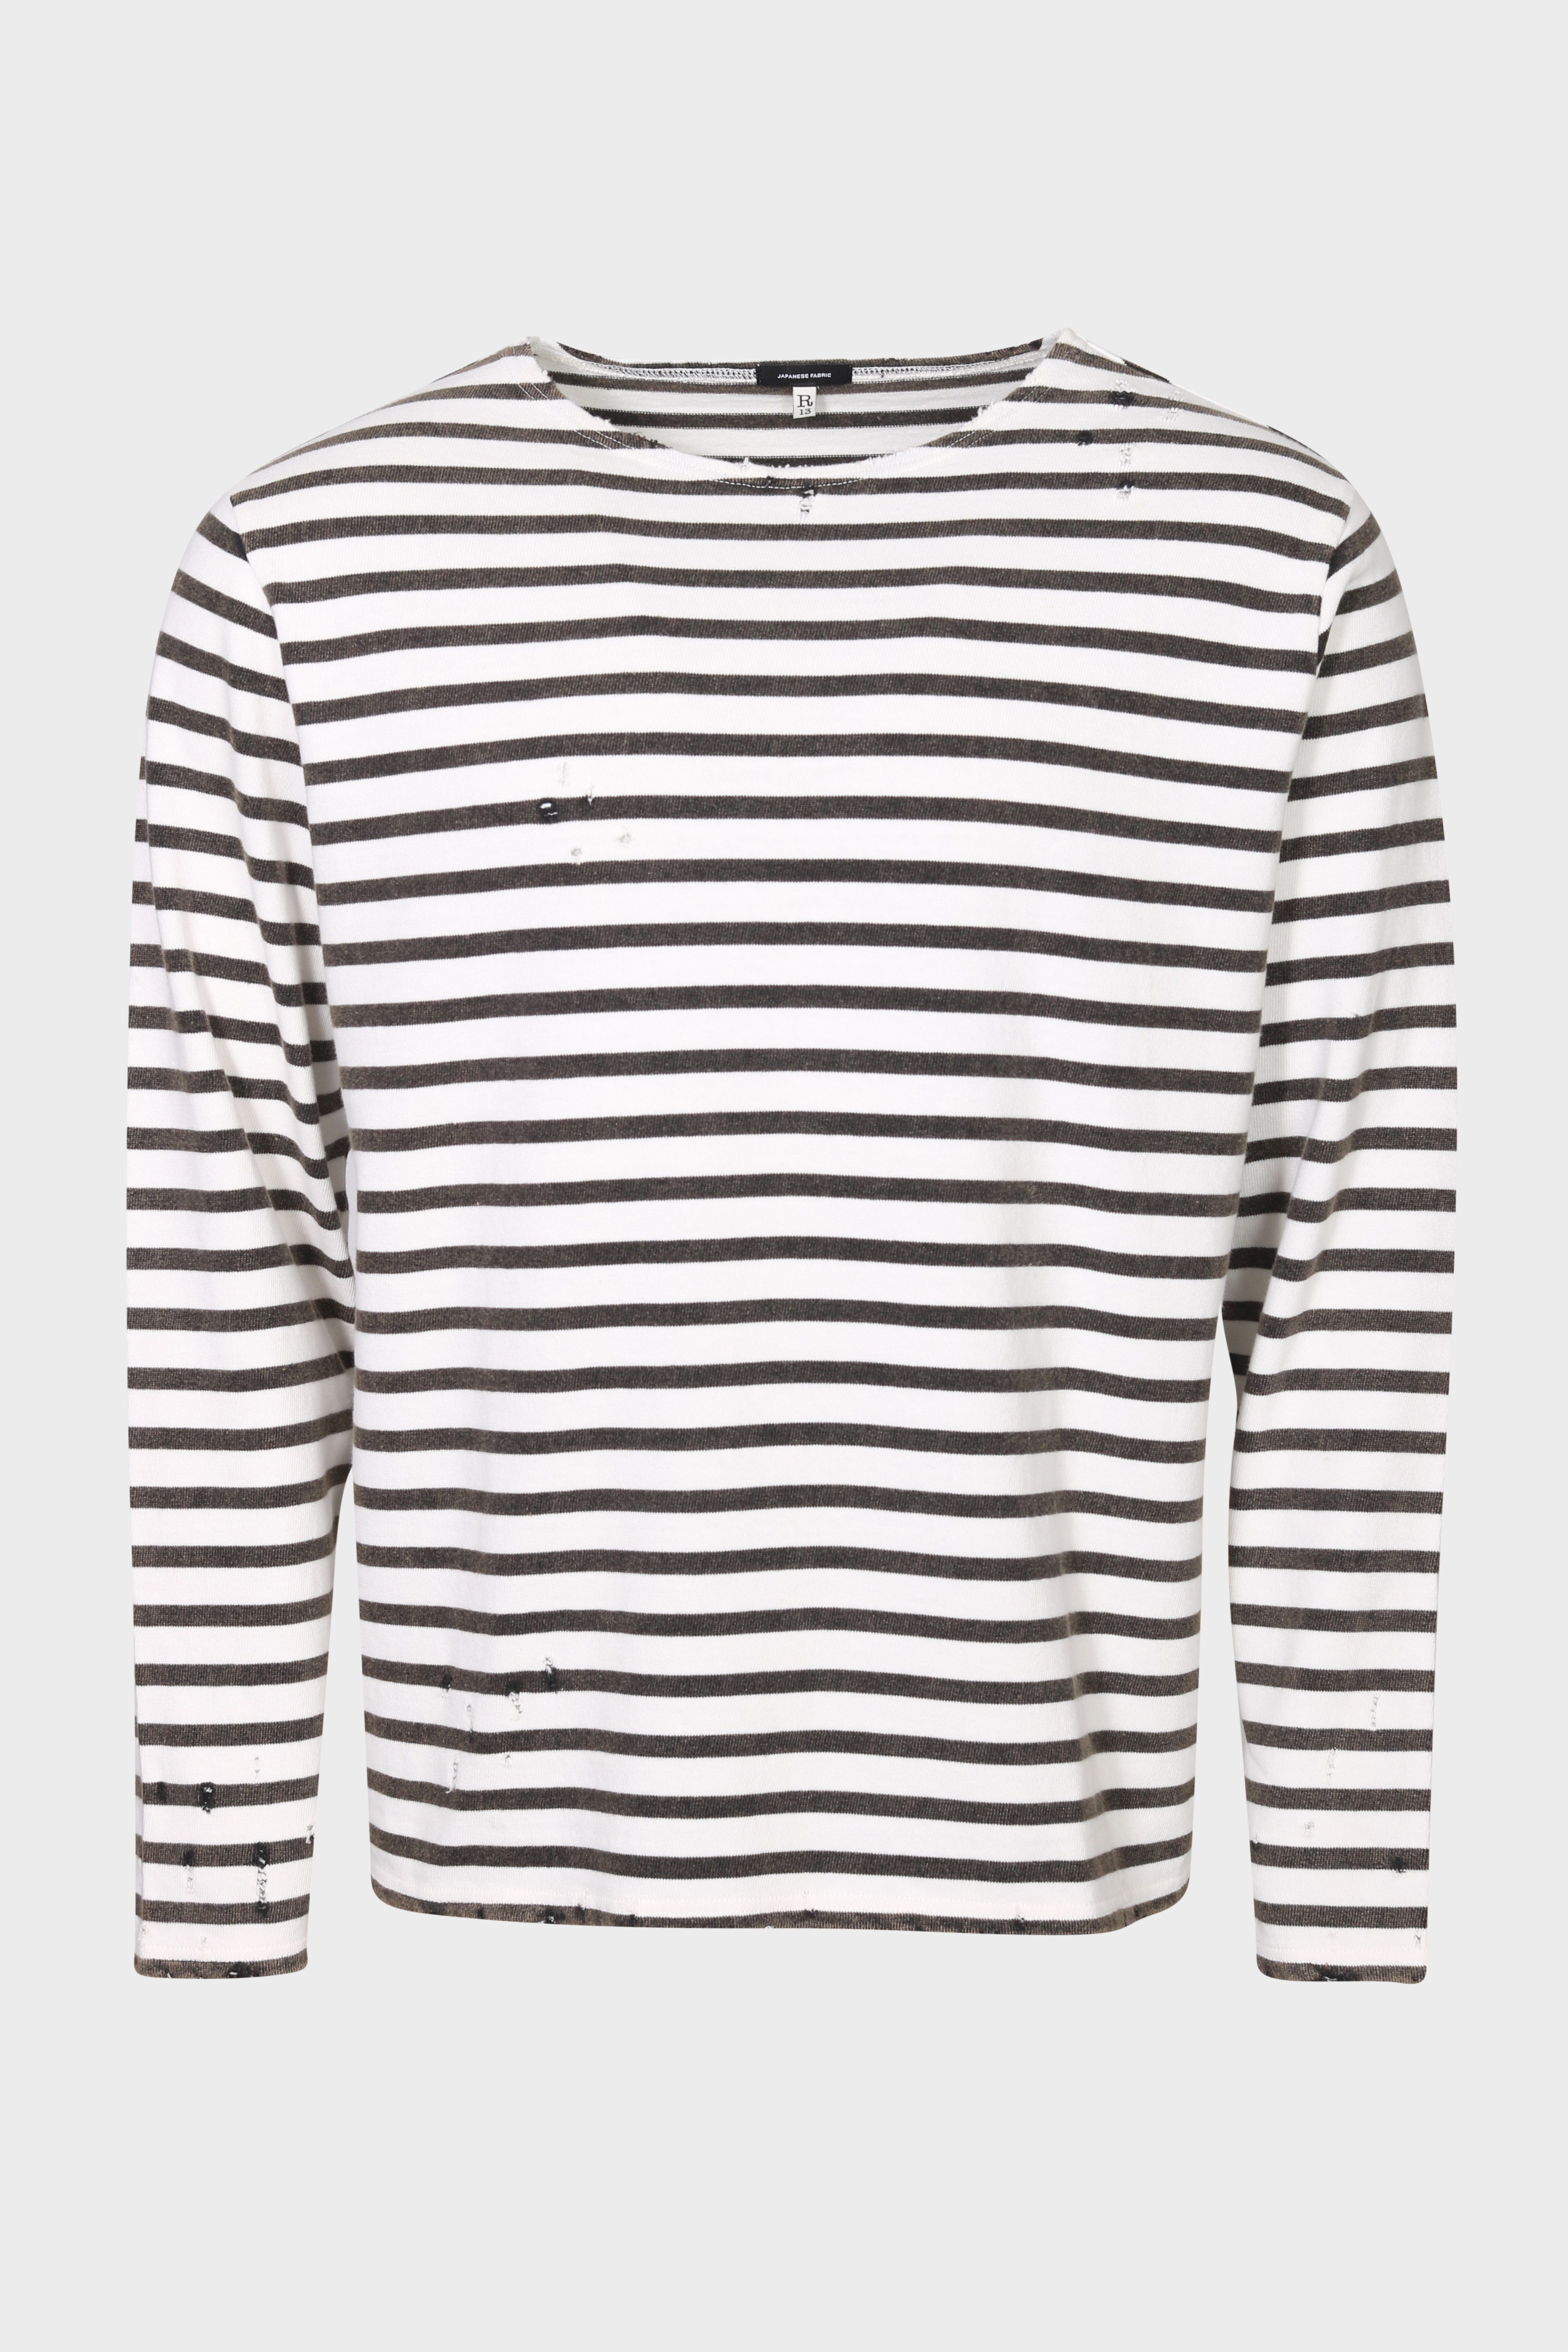 R13 Breton Sweater in Black/Ecru Stripe M